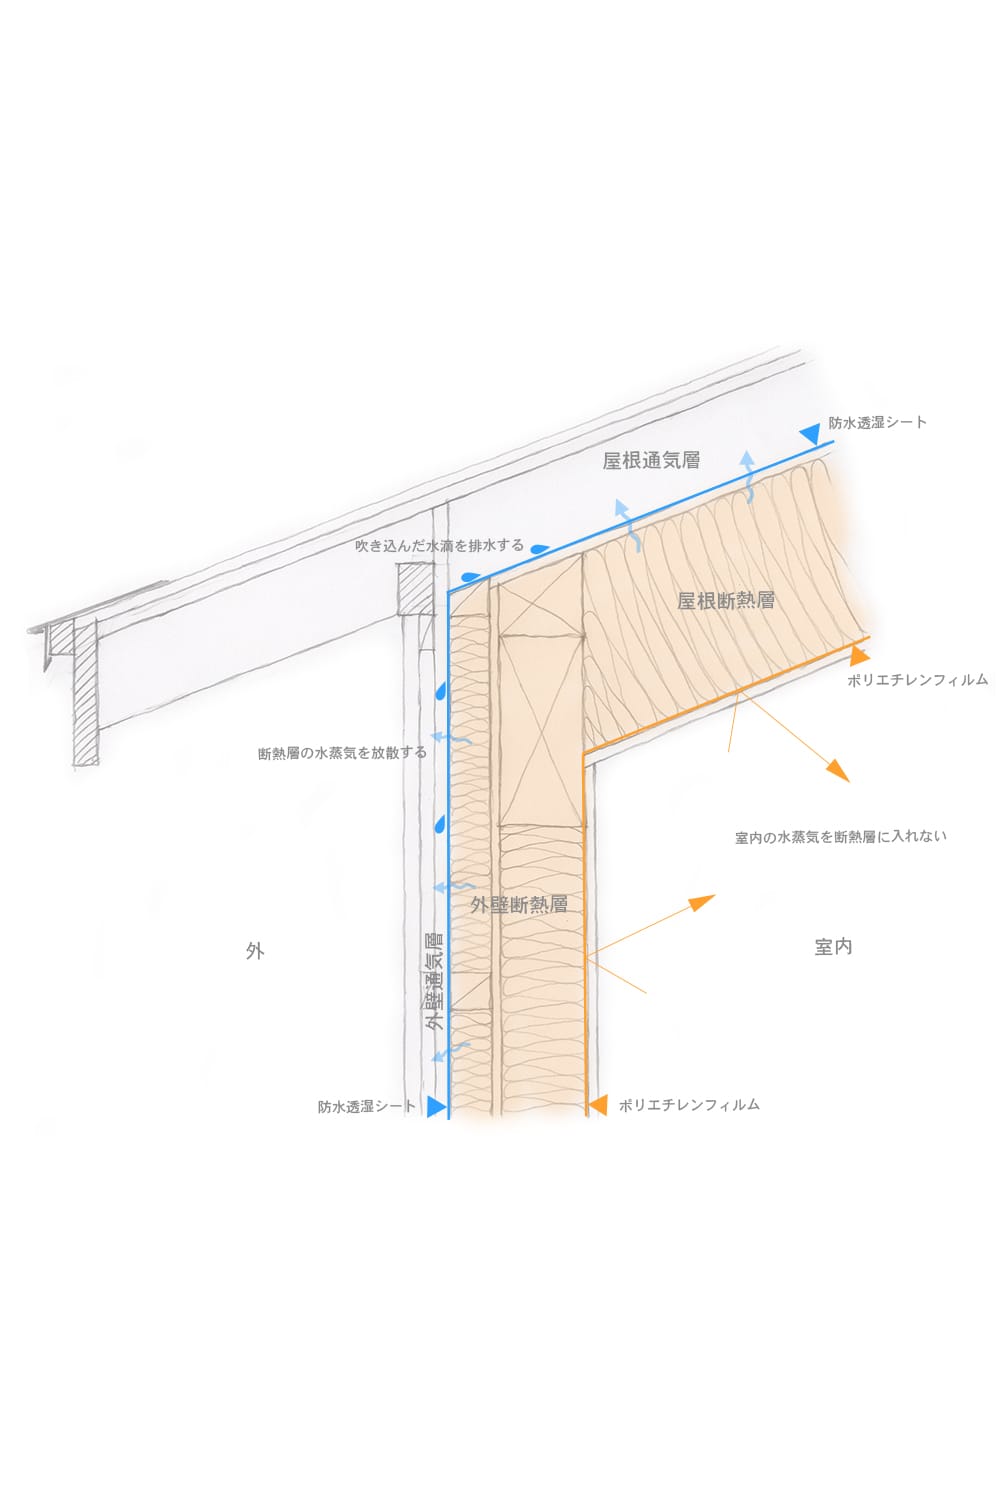 気密と断熱と通気 家と草木のアトリエ Hausgras 札幌の建築家 北海道の設計事務所 高気密高断熱外壁屋根通気の家の設計